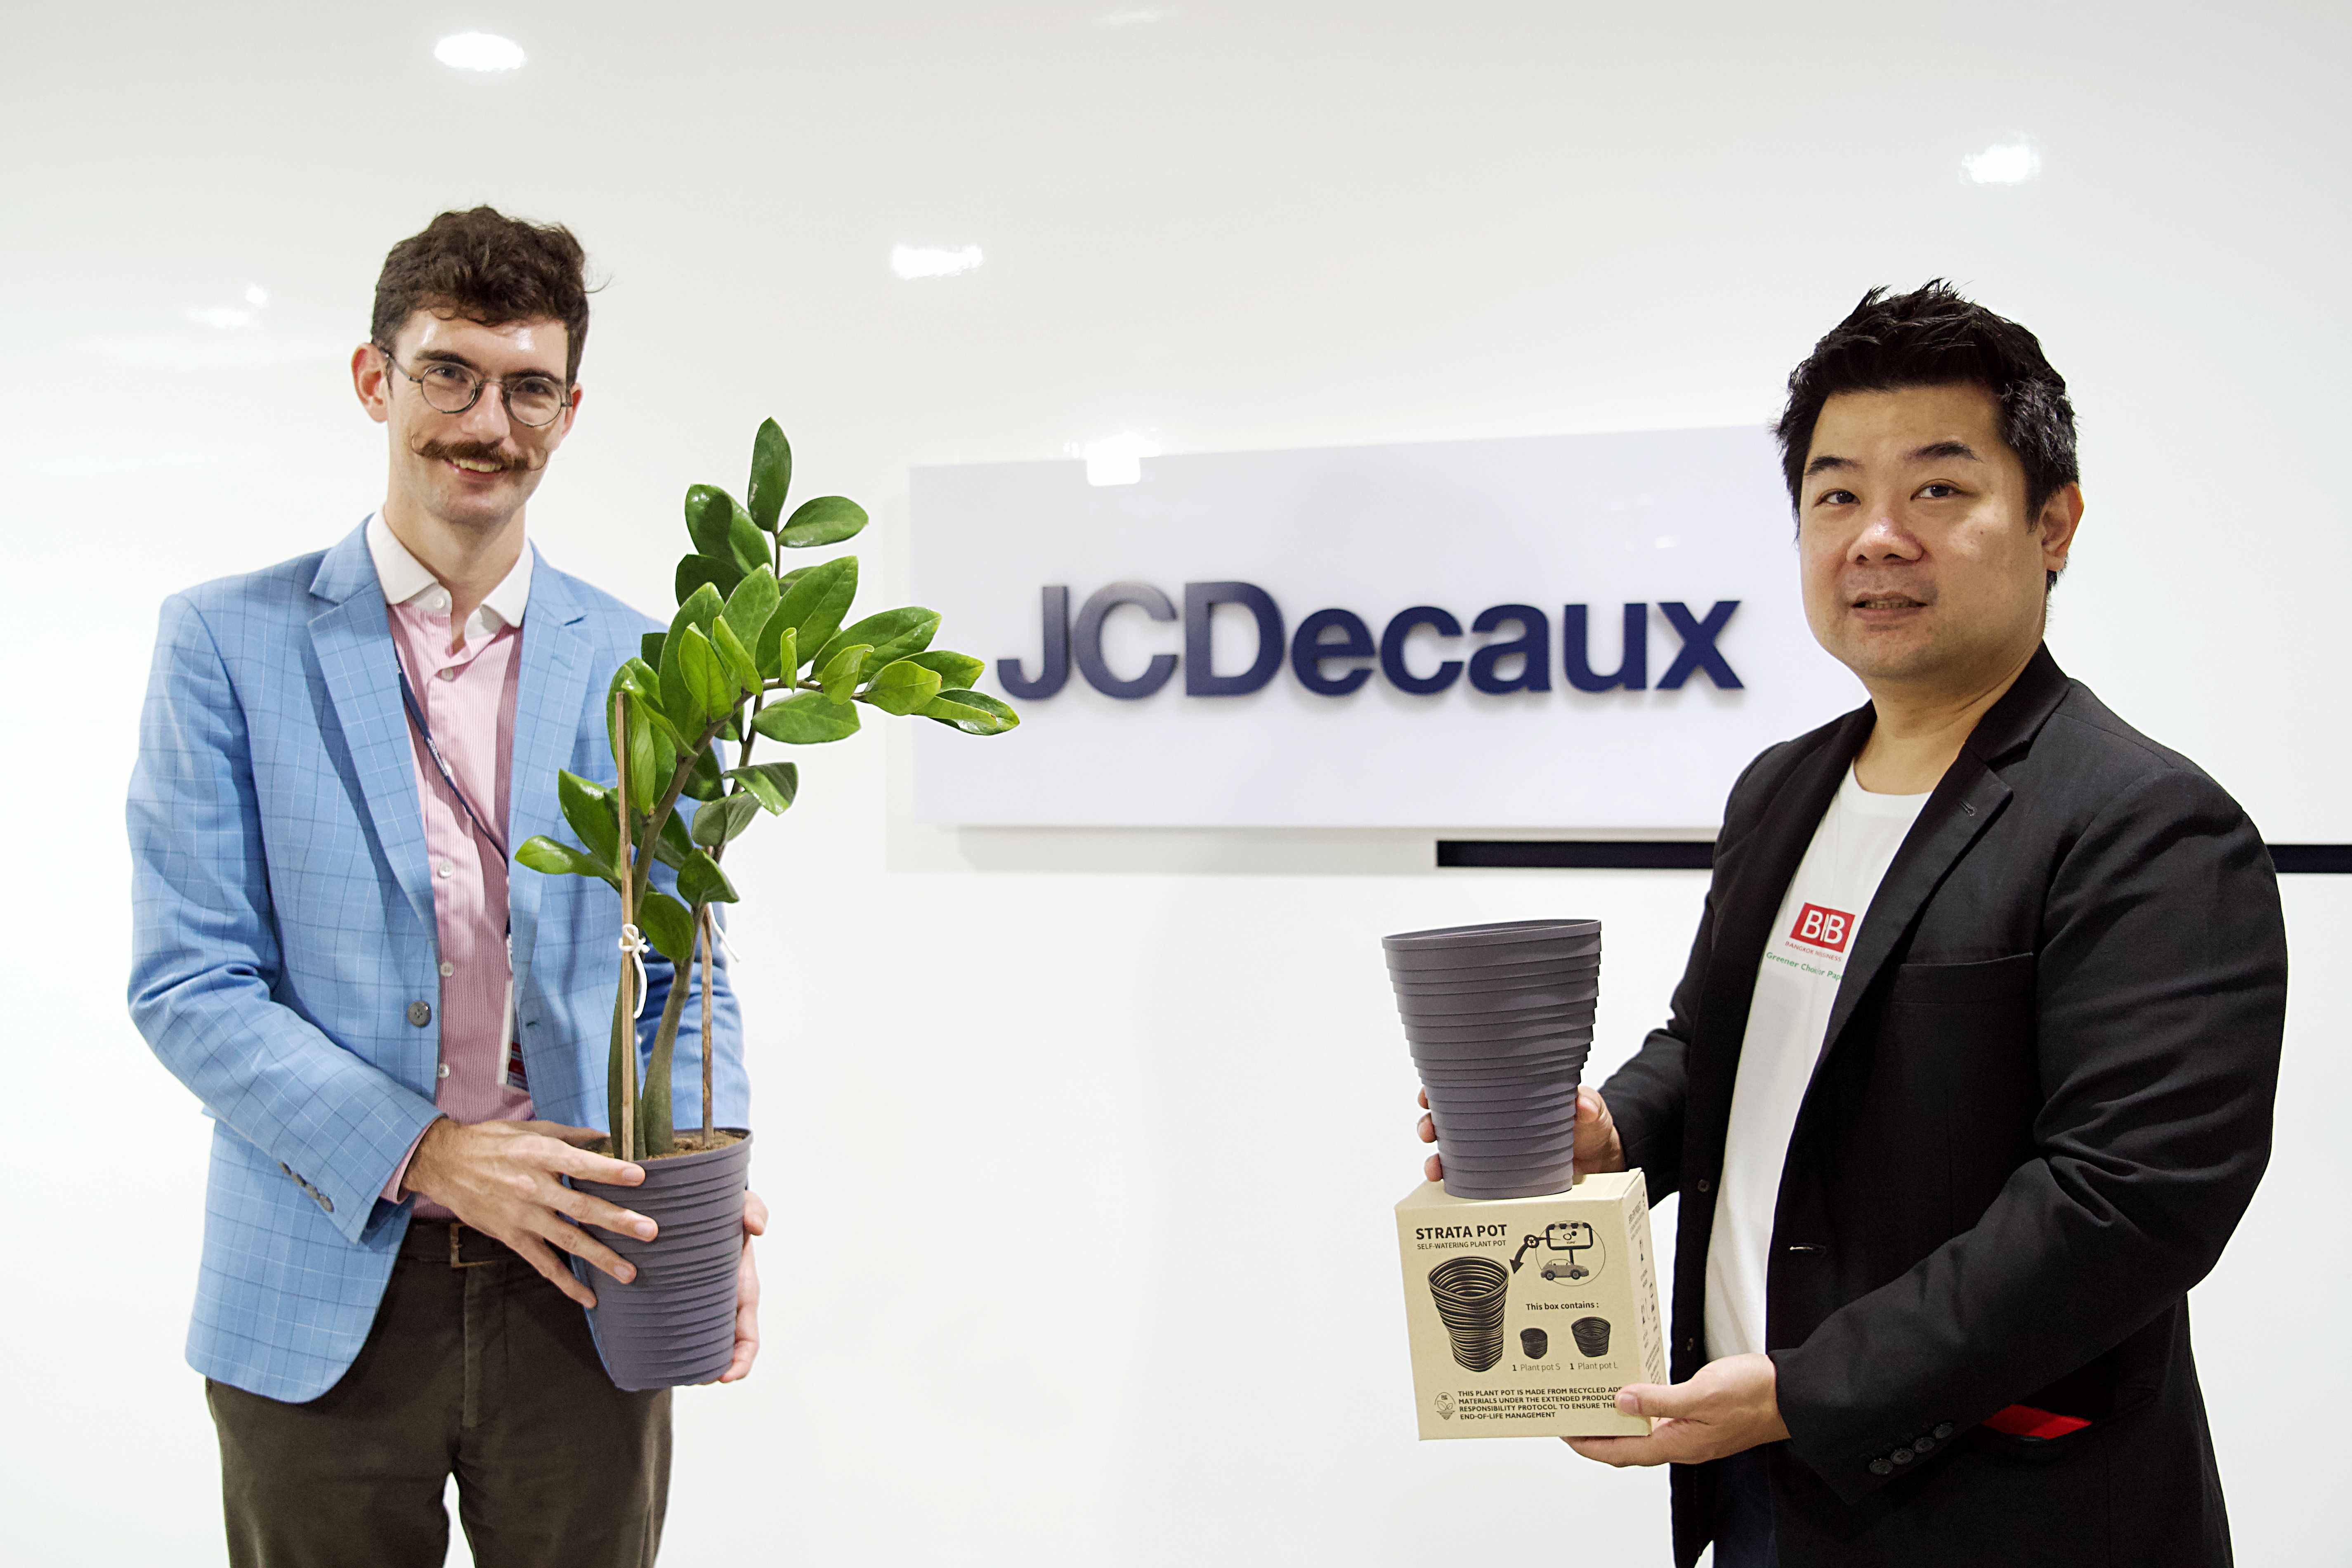 ข่าวภาษาอังกฤษ - BPB joins forces with JCDecaux to promote sustainability!  Upcycling 'used billboards' into 'flower pots' reducing waste by 100%